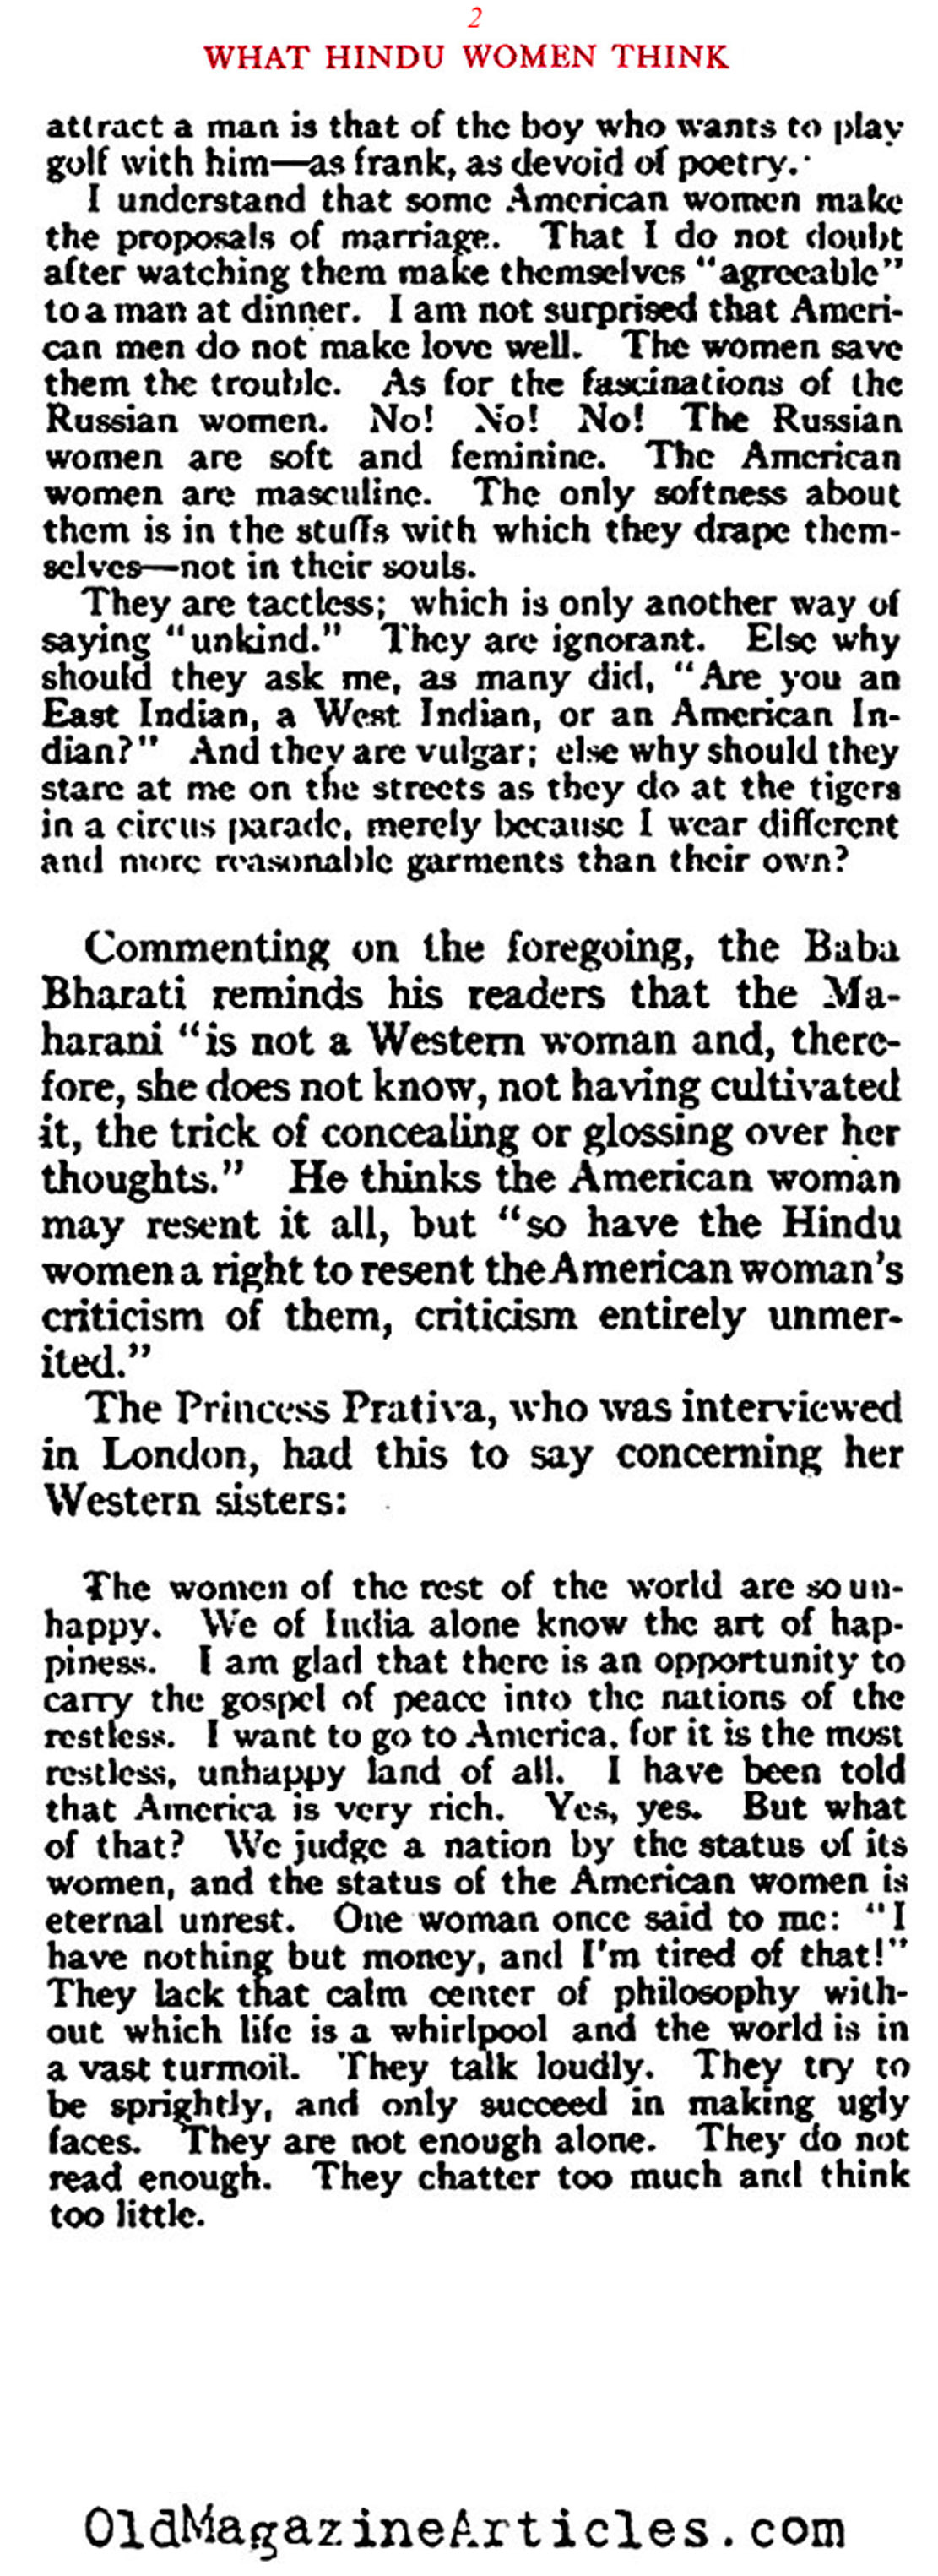 American Womanhood Slandered (Review of Reviews, 1910)